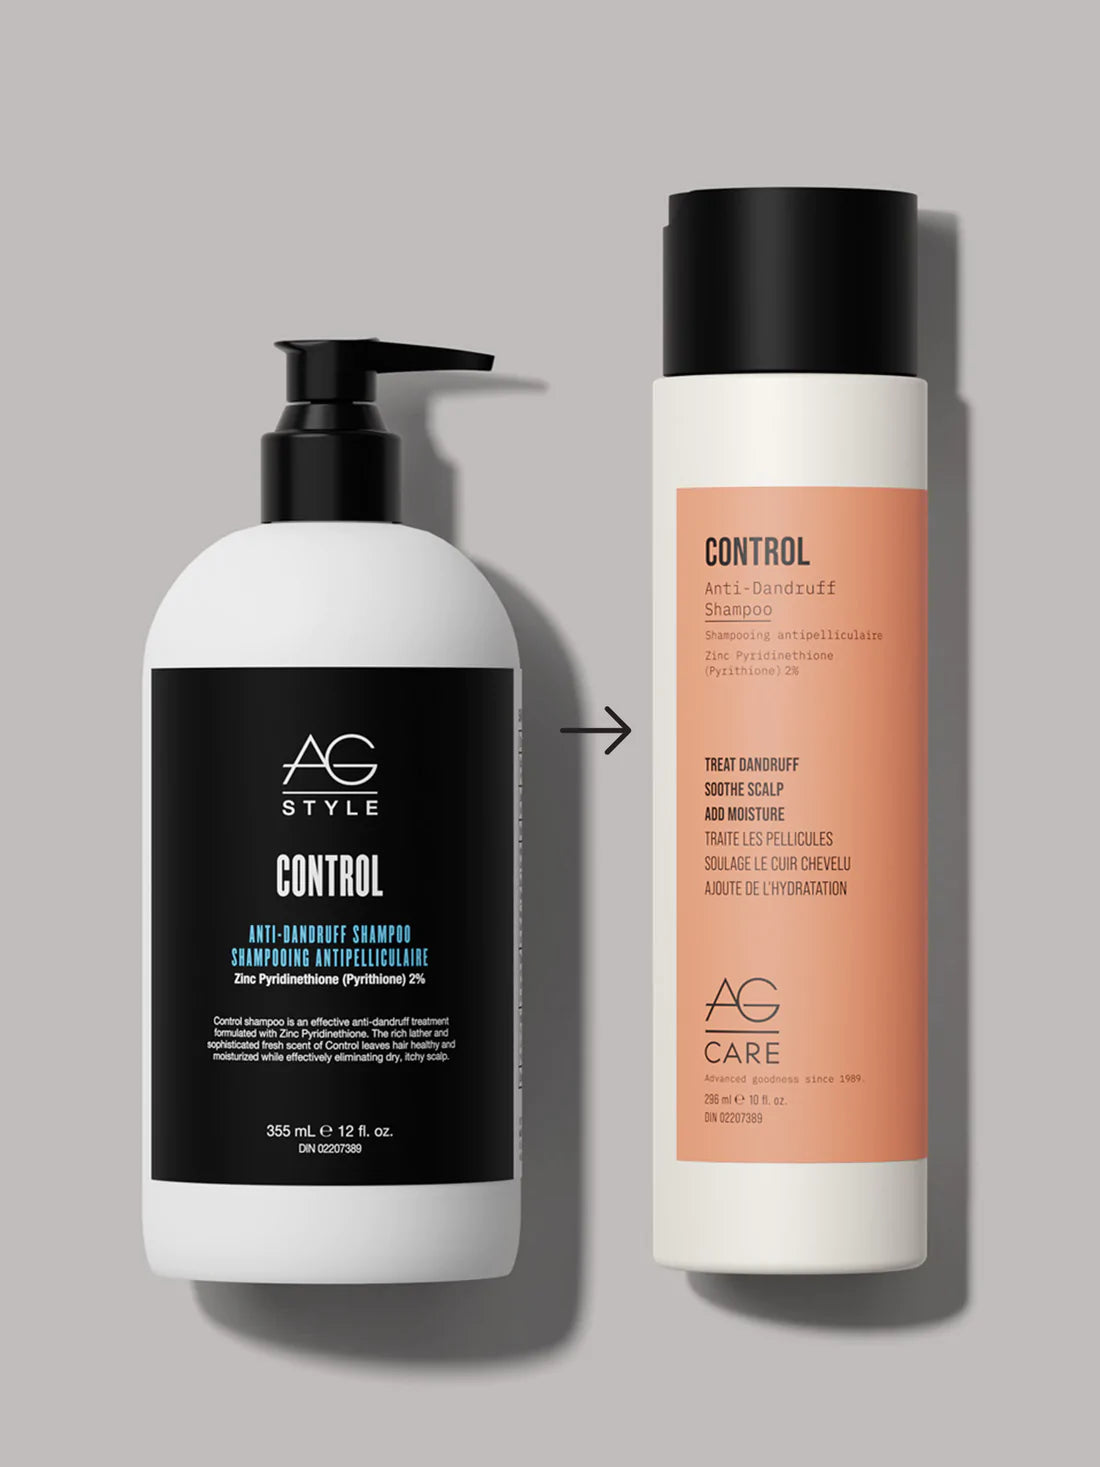 AG Care Control Anti-Dandruff Shampoo 296 ml